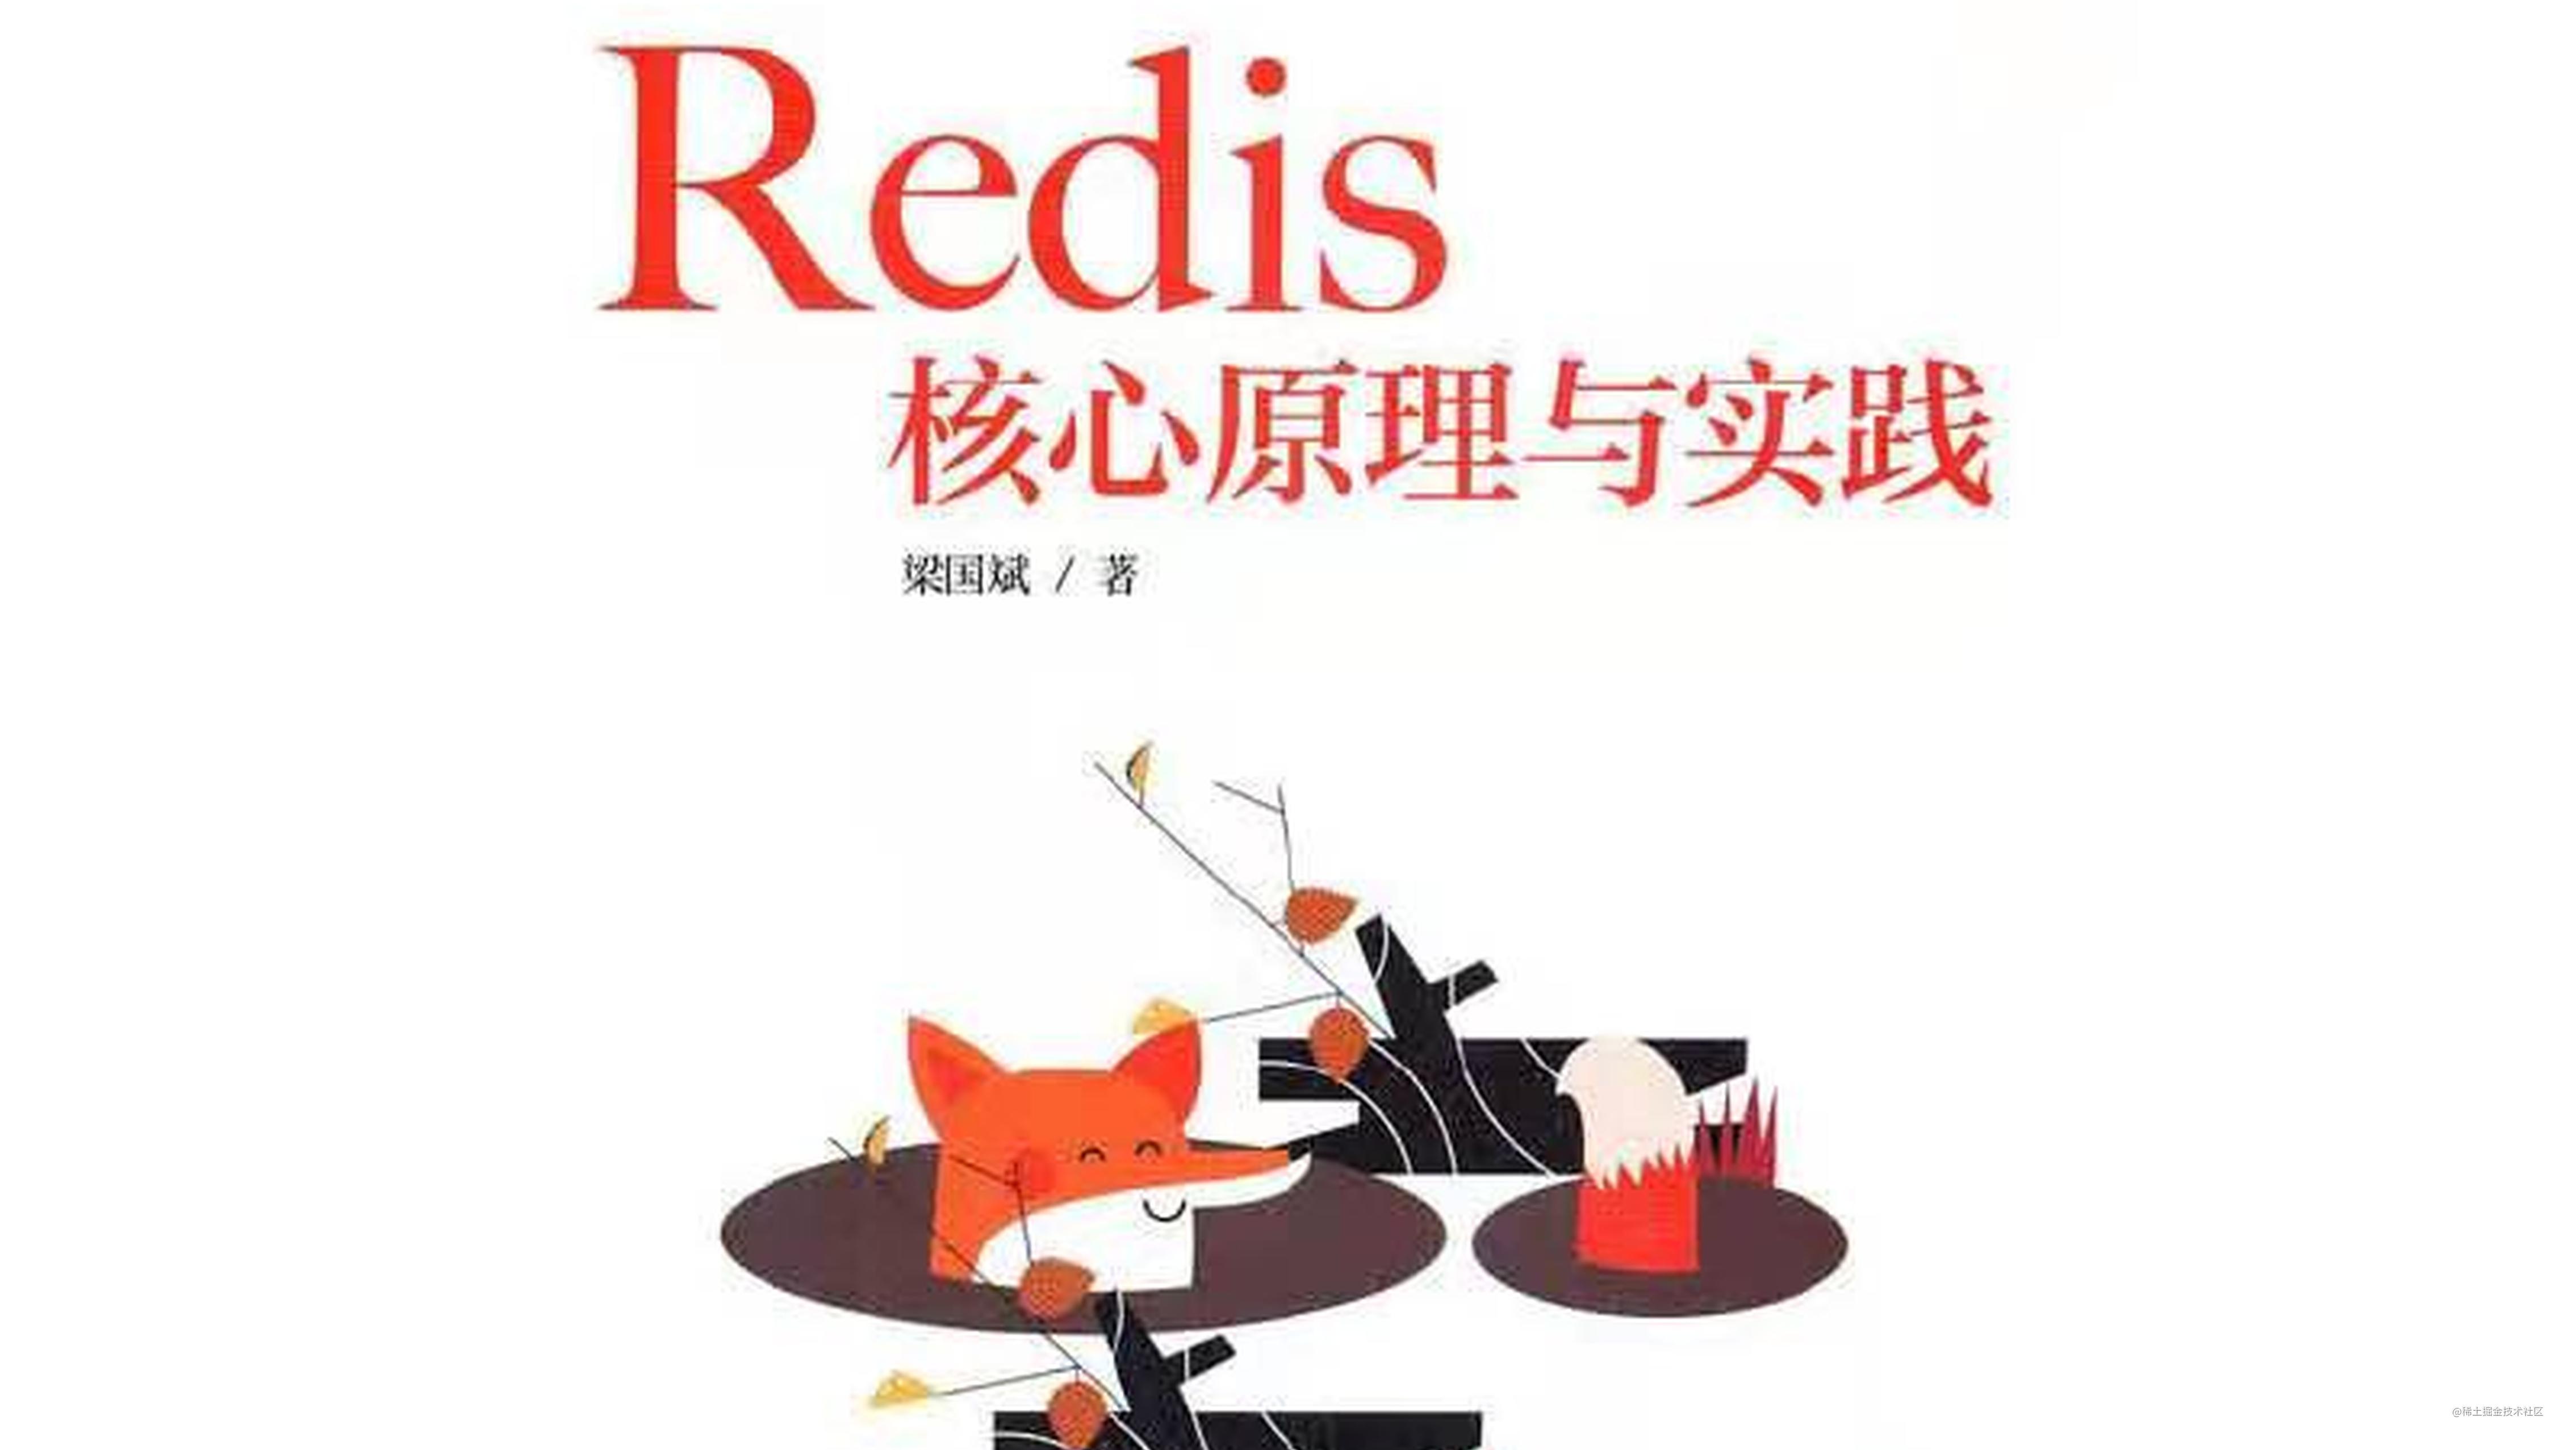 新书介绍 -- 《Redis核心原理与实践》